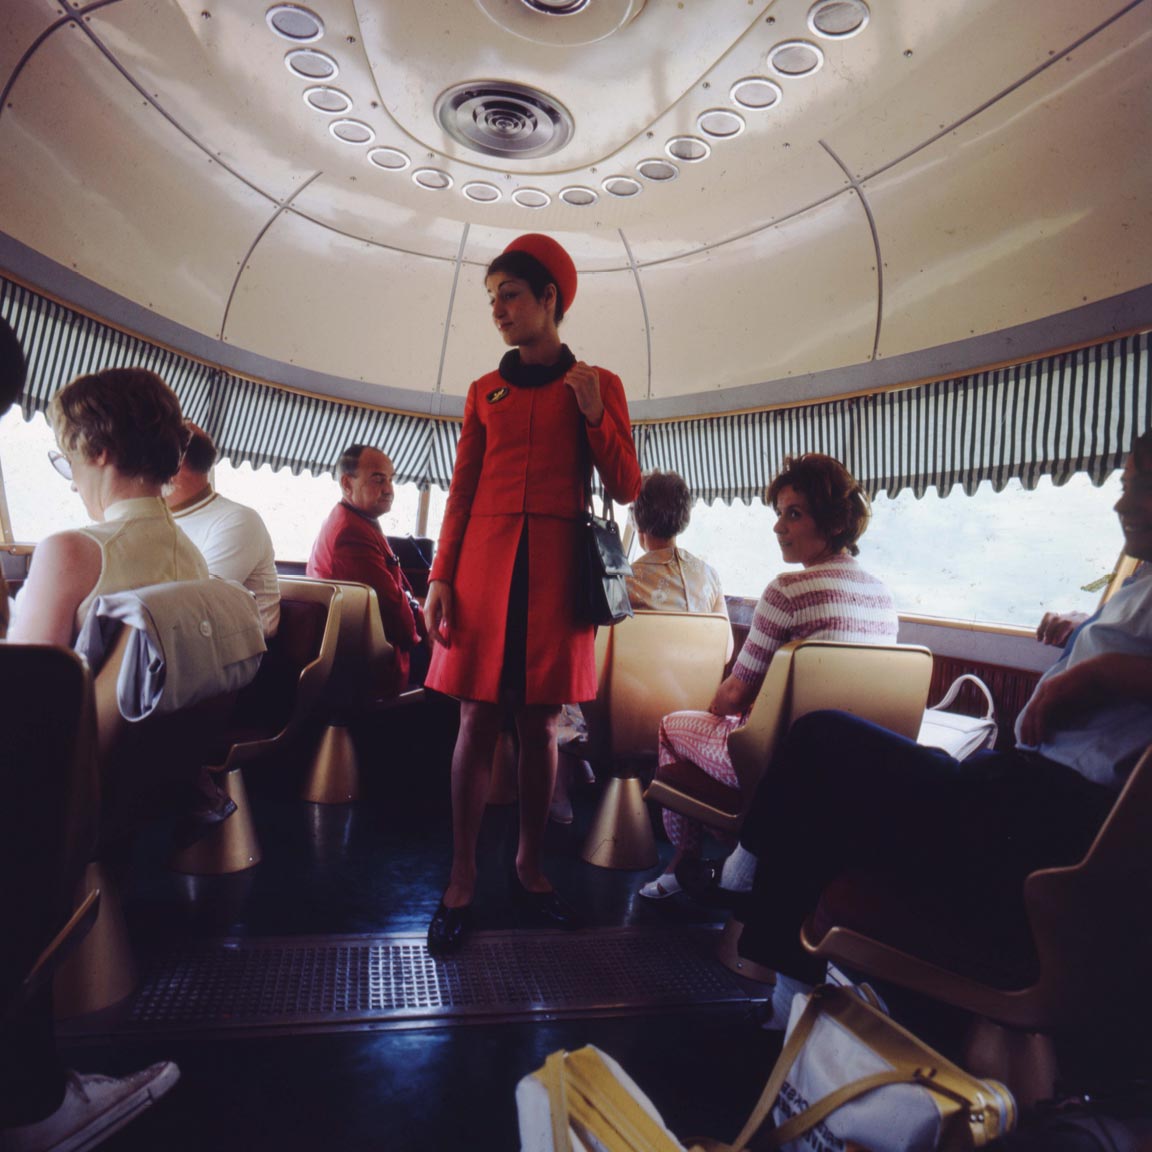 TEE-stewardess in de Settebello, jaren 70  | Ferrovie dello Stato Italiane/Flickr